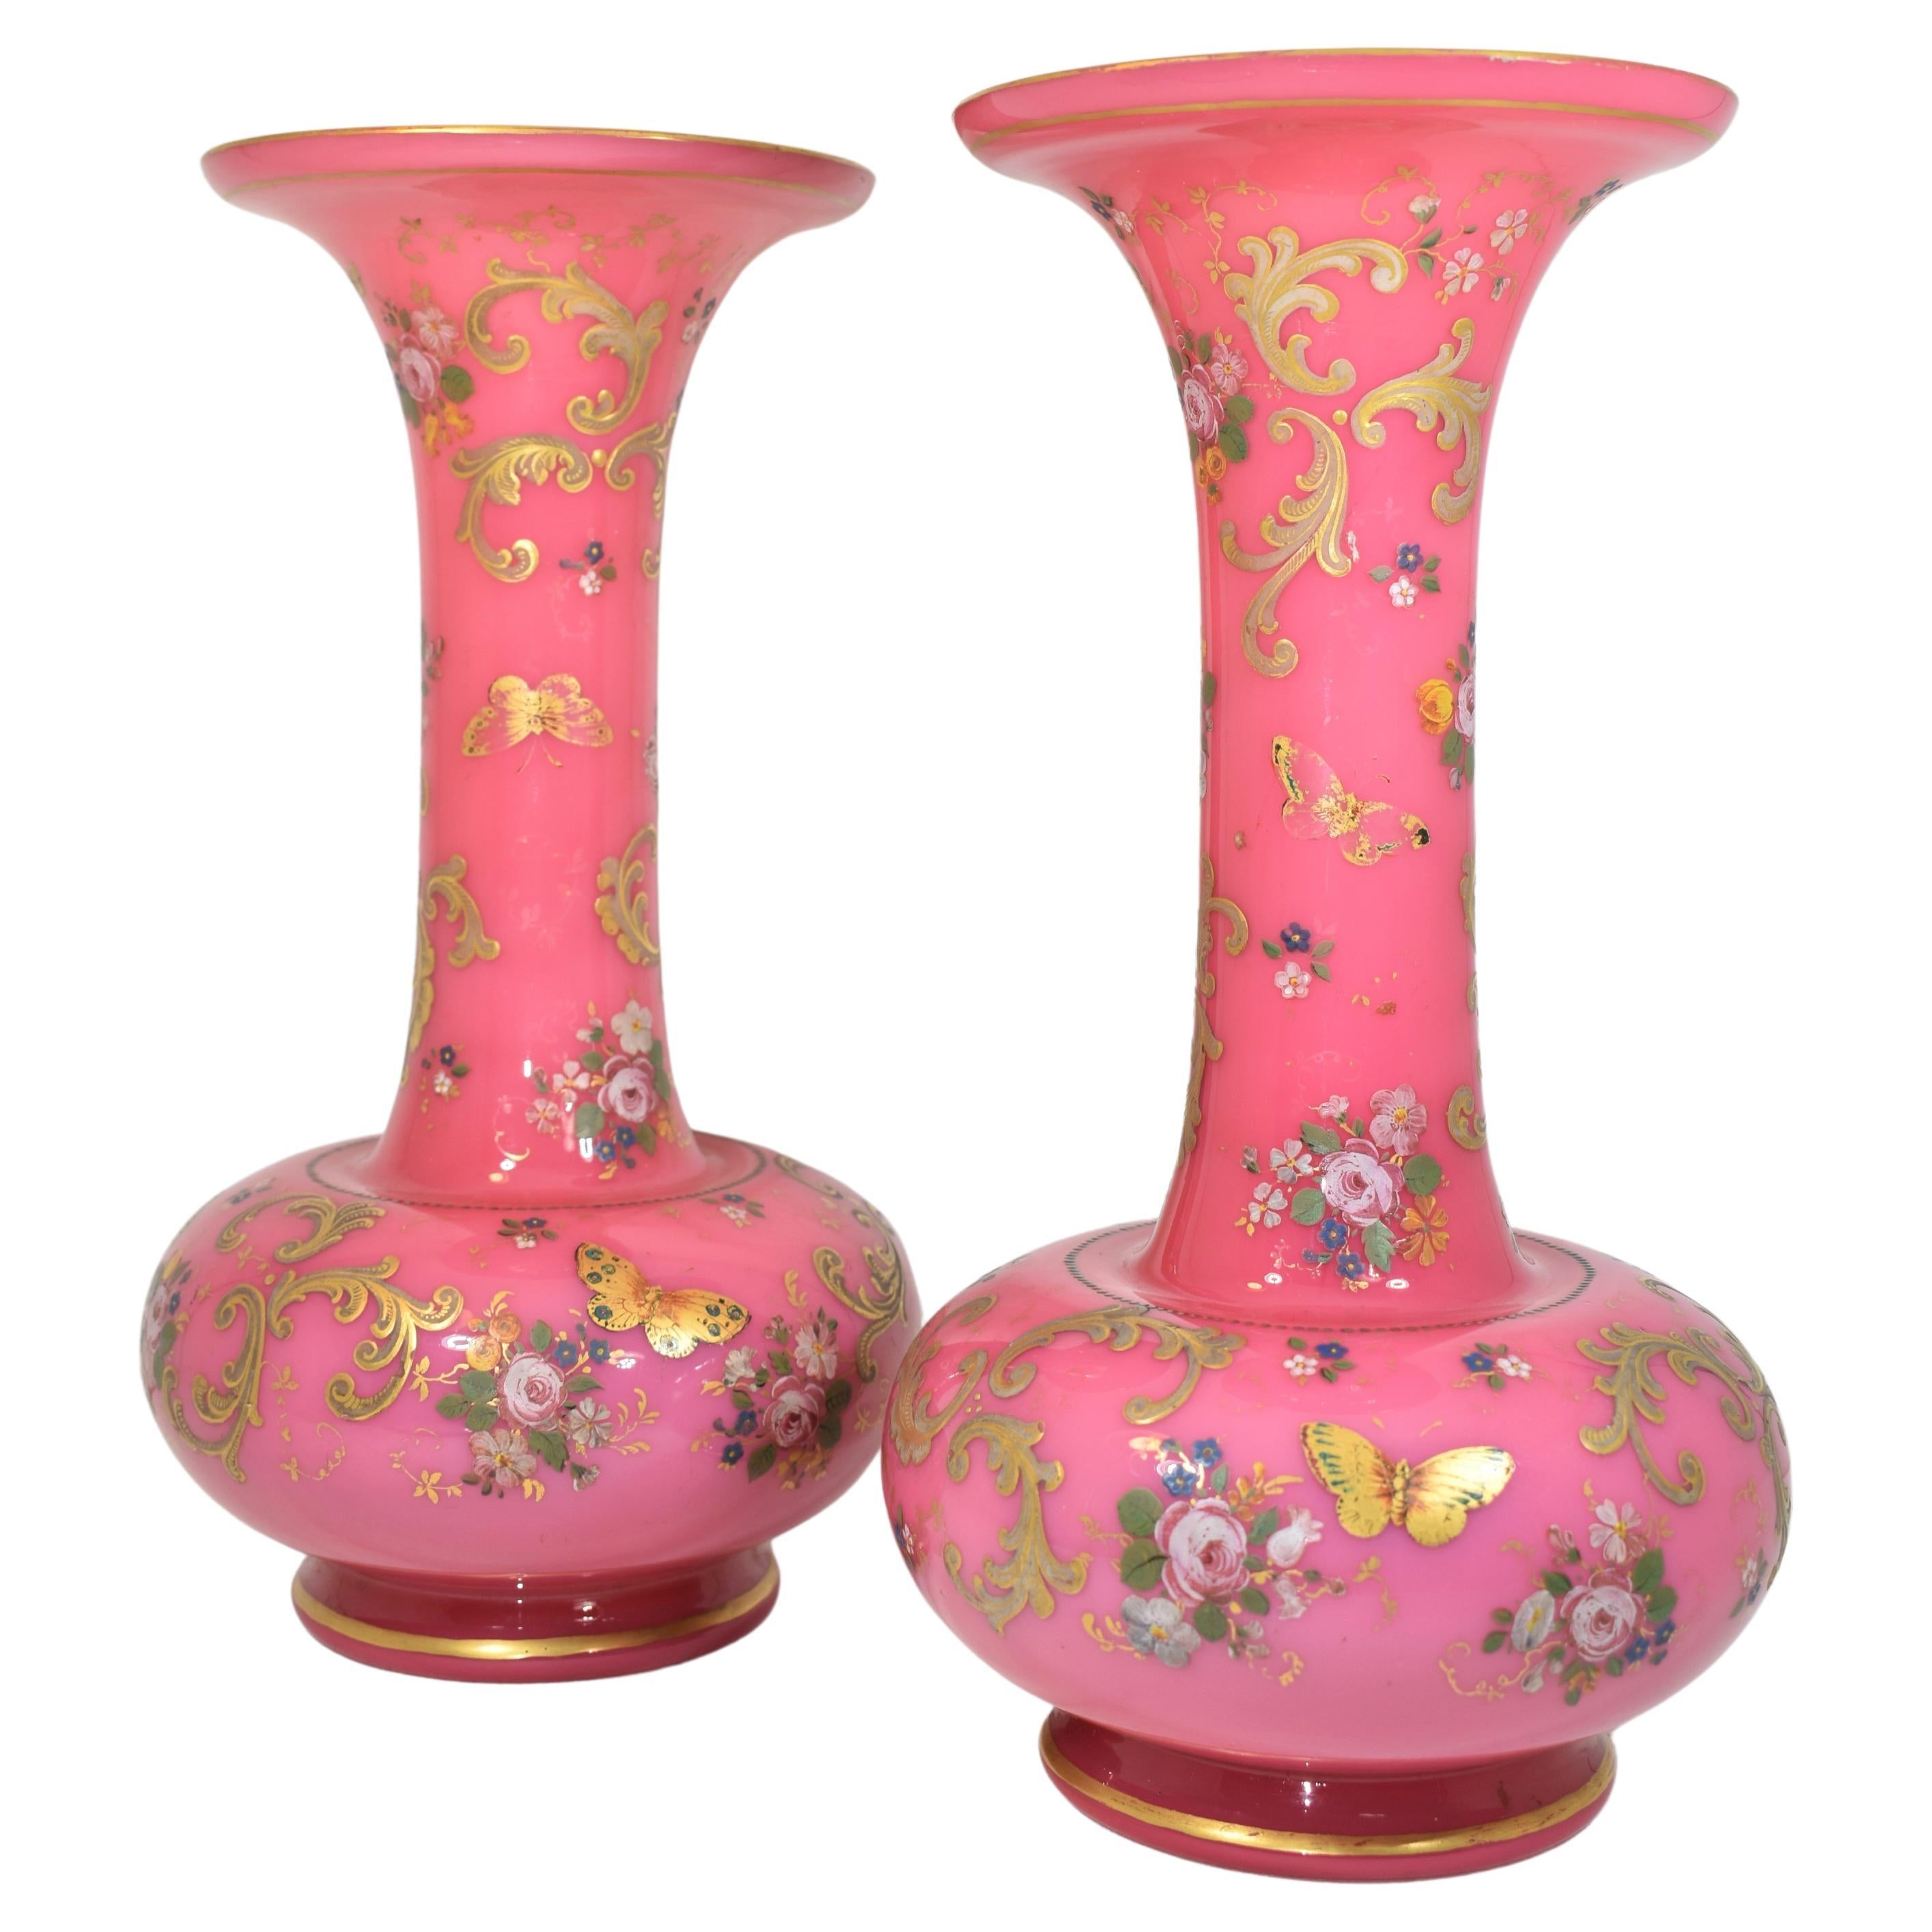 Paire exceptionnelle de vases en verre opalin émaillé à deux couches, blanc opaque à l'intérieur et rose à l'extérieur, les corps circulaires sont richement peints à la main tout autour avec un décor en émail doré, l'émaillage de haute qualité